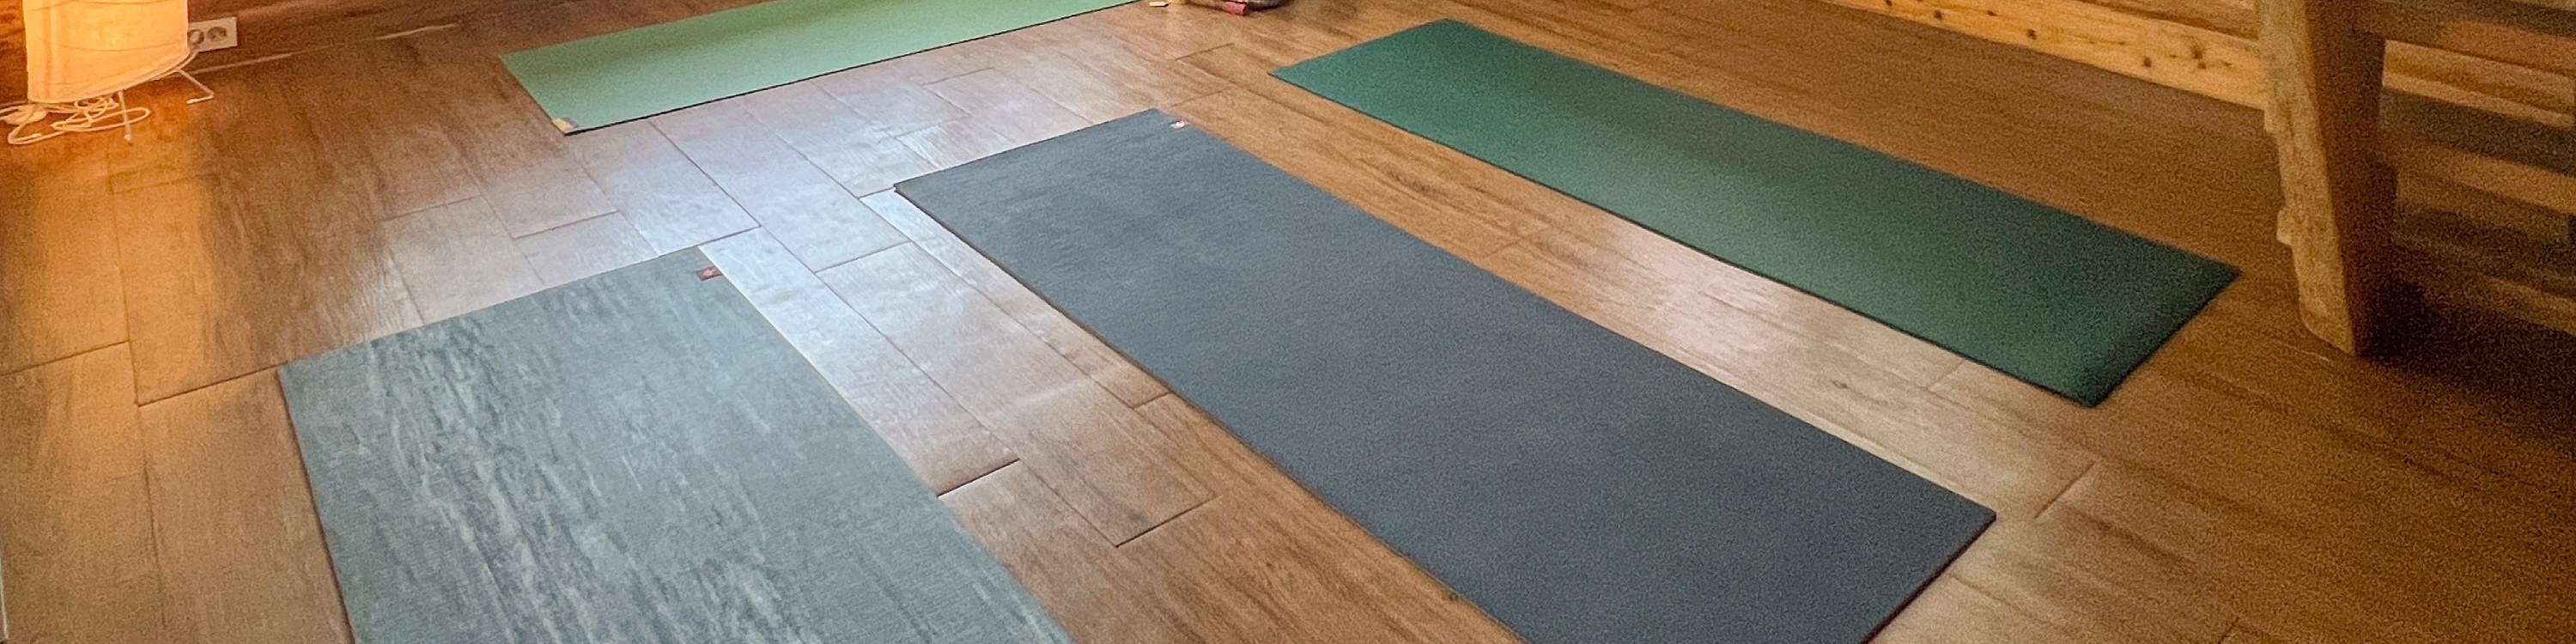 濟州瑜伽一日課程